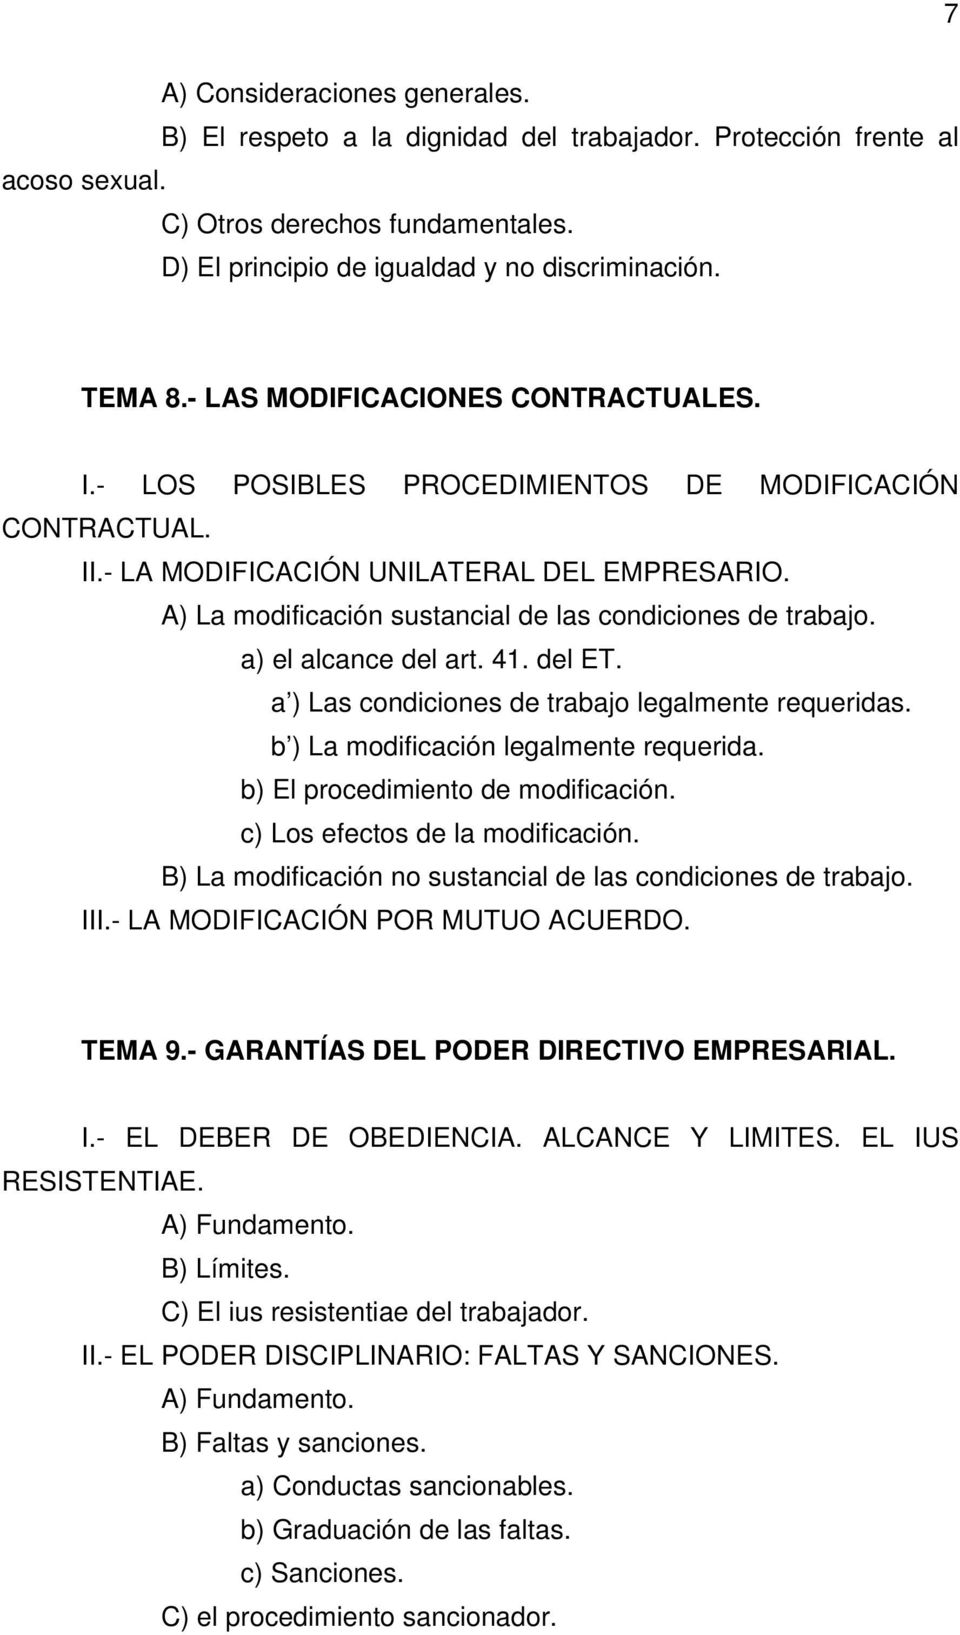 A) La modificación sustancial de las condiciones de trabajo. a) el alcance del art. 41. del ET. a ) Las condiciones de trabajo legalmente requeridas. b ) La modificación legalmente requerida.